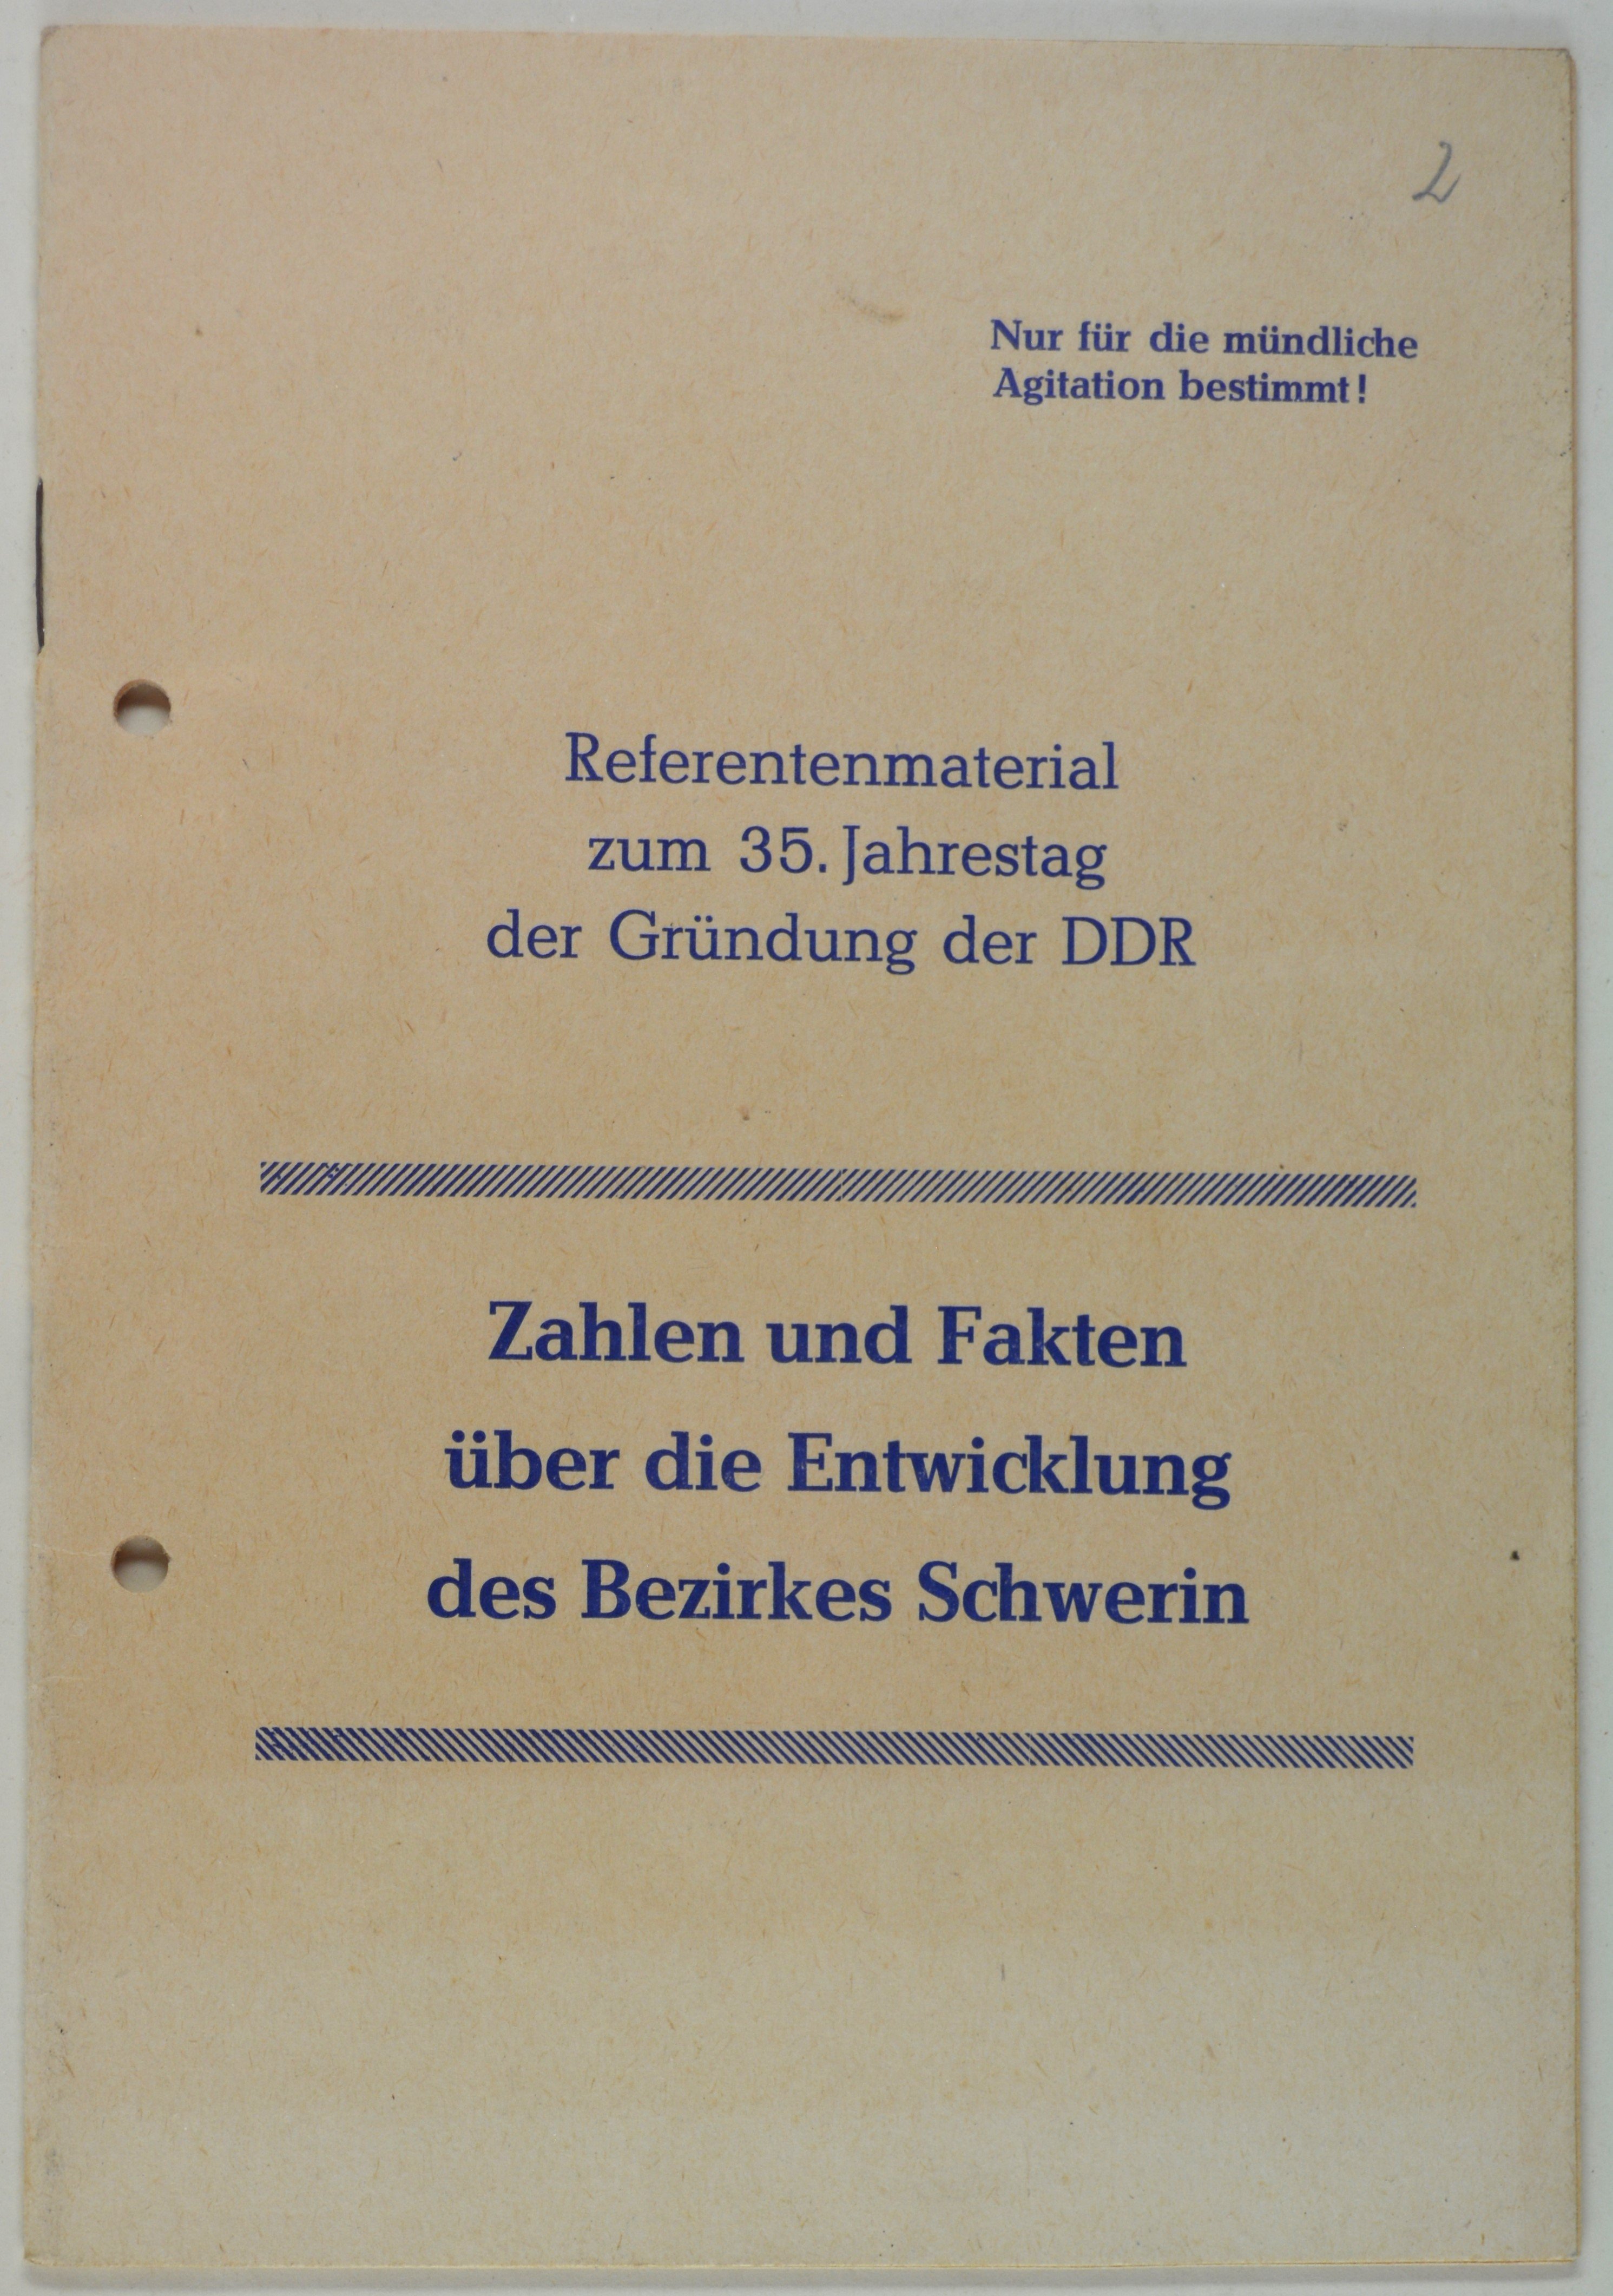 Broschüre: Referentenmaterial zum 35. Jahrestag der Gründung der DDR (DDR Geschichtsmuseum im Dokumentationszentrum Perleberg CC BY-SA)